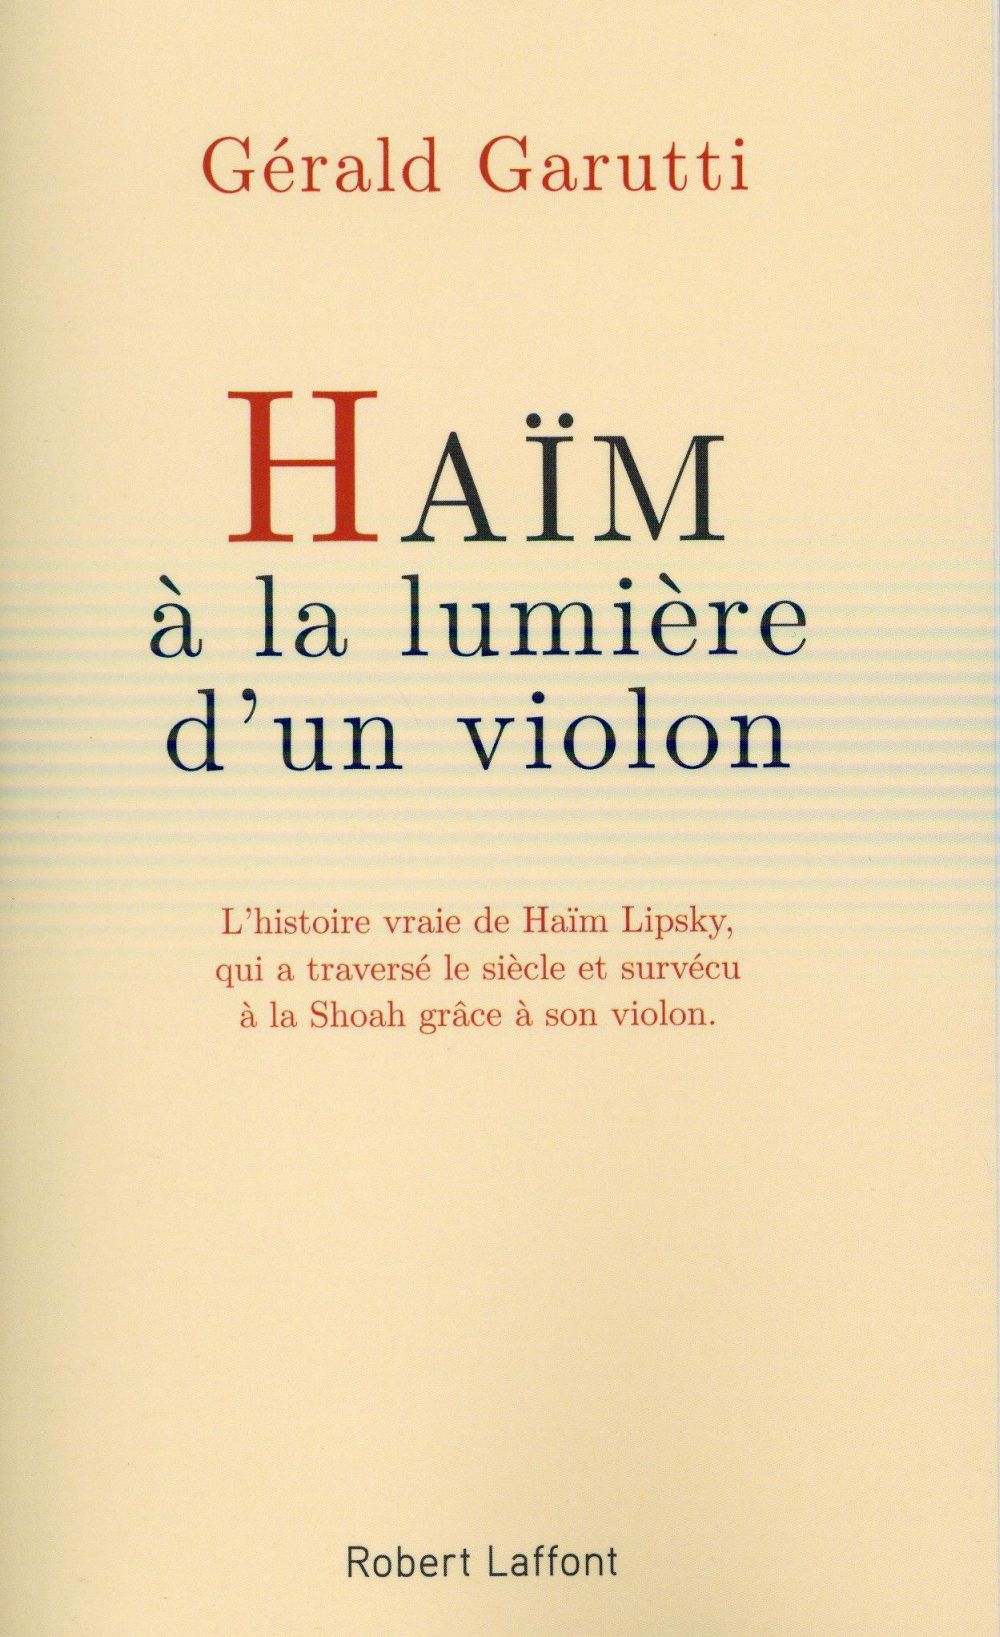 HAIM, A LA LUMIERE D'UN VIOLON